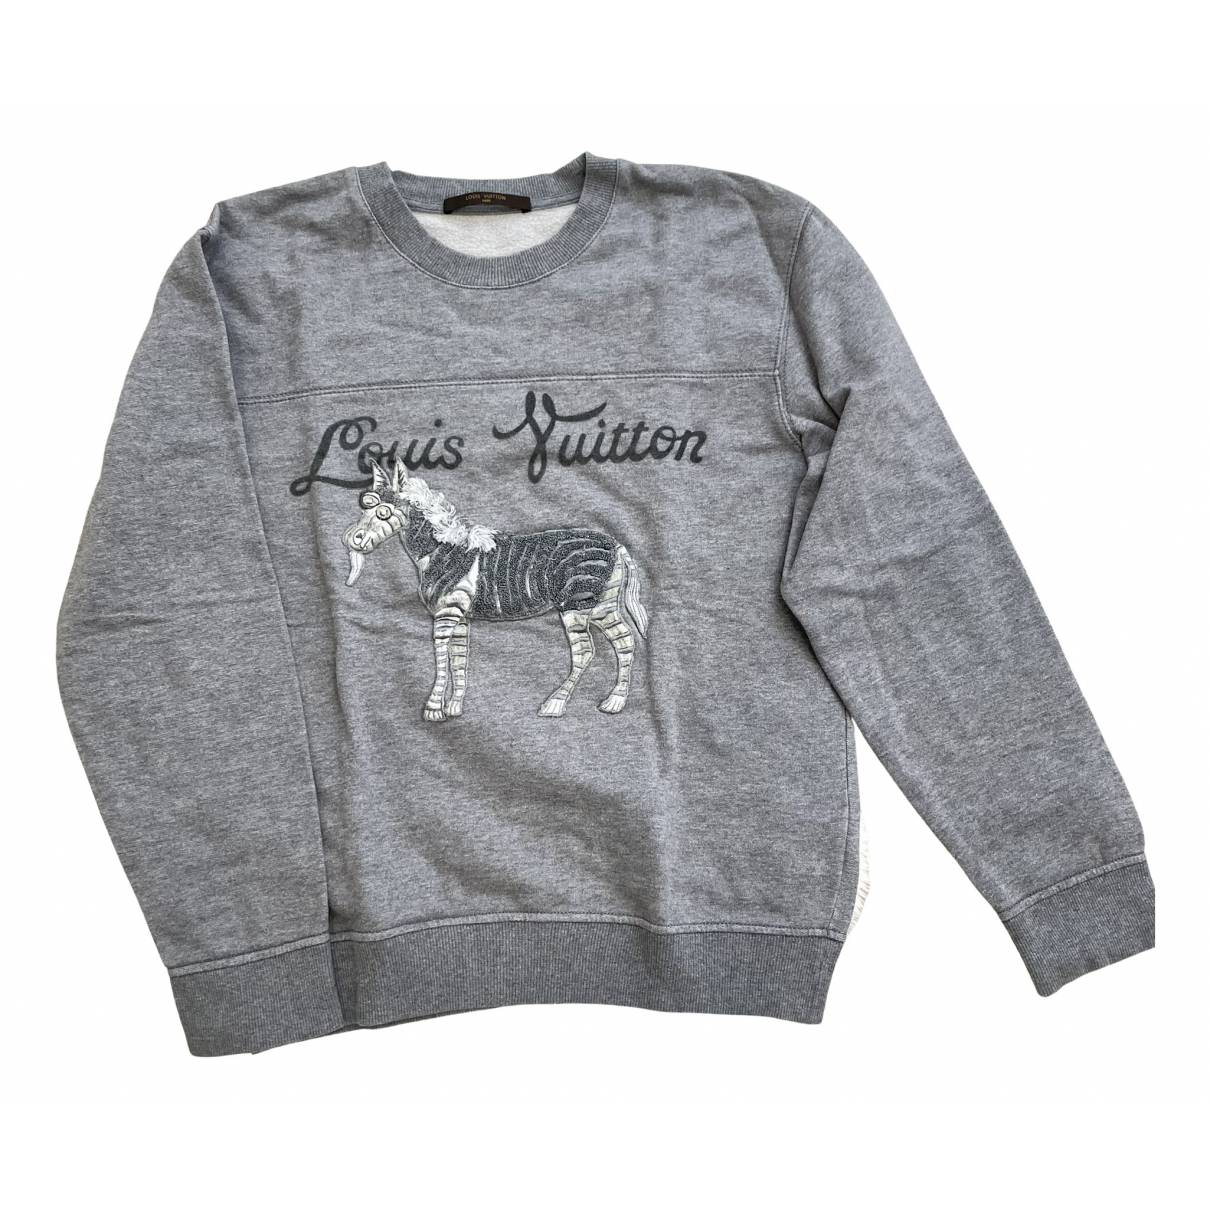 Sweatshirt Louis Vuitton Grey size S International in Cotton - 24098064